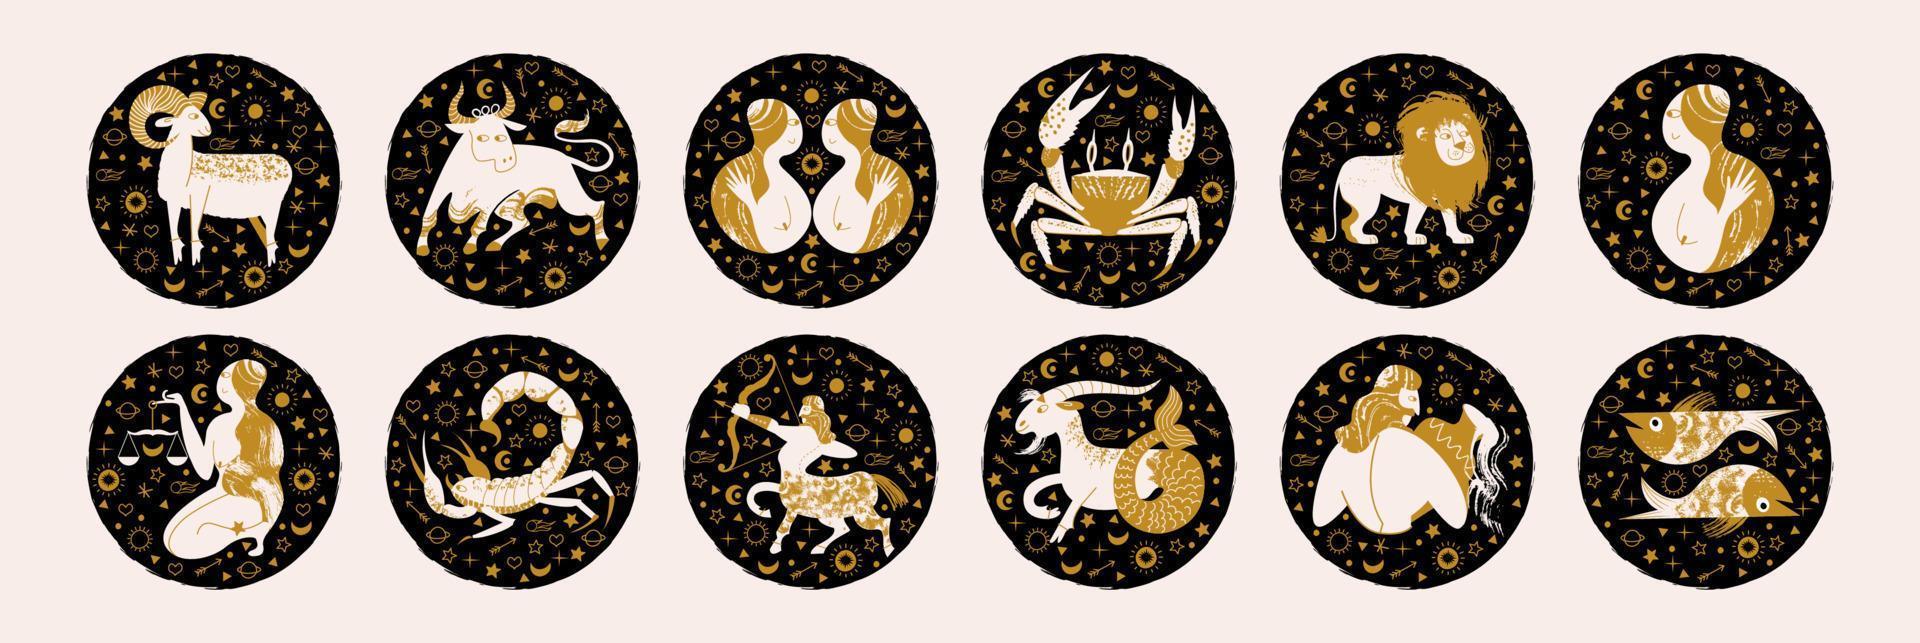 Zodiac sign. Vector emblems in a black circle. Zodiac signs Aries, Taurus, Gemini, Cancer, Leo, Virgo, Libra, Scorpio, Sagittarius, Capricorn, Aquarius, Pisces.